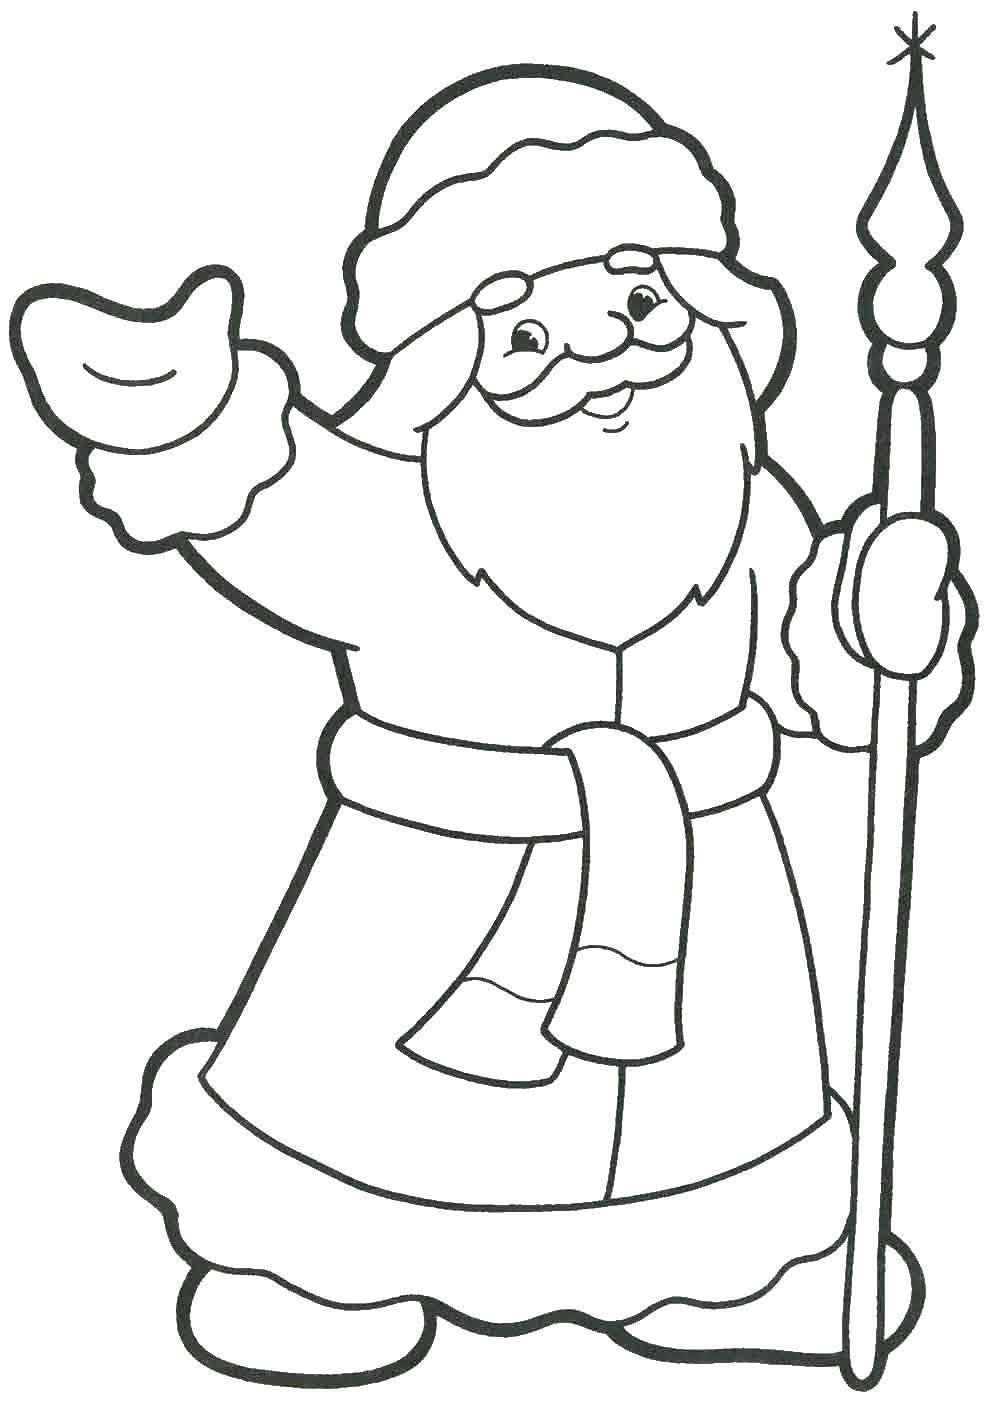 Coloring Santa Claus. Category coloring. Tags:  Santa Claus.